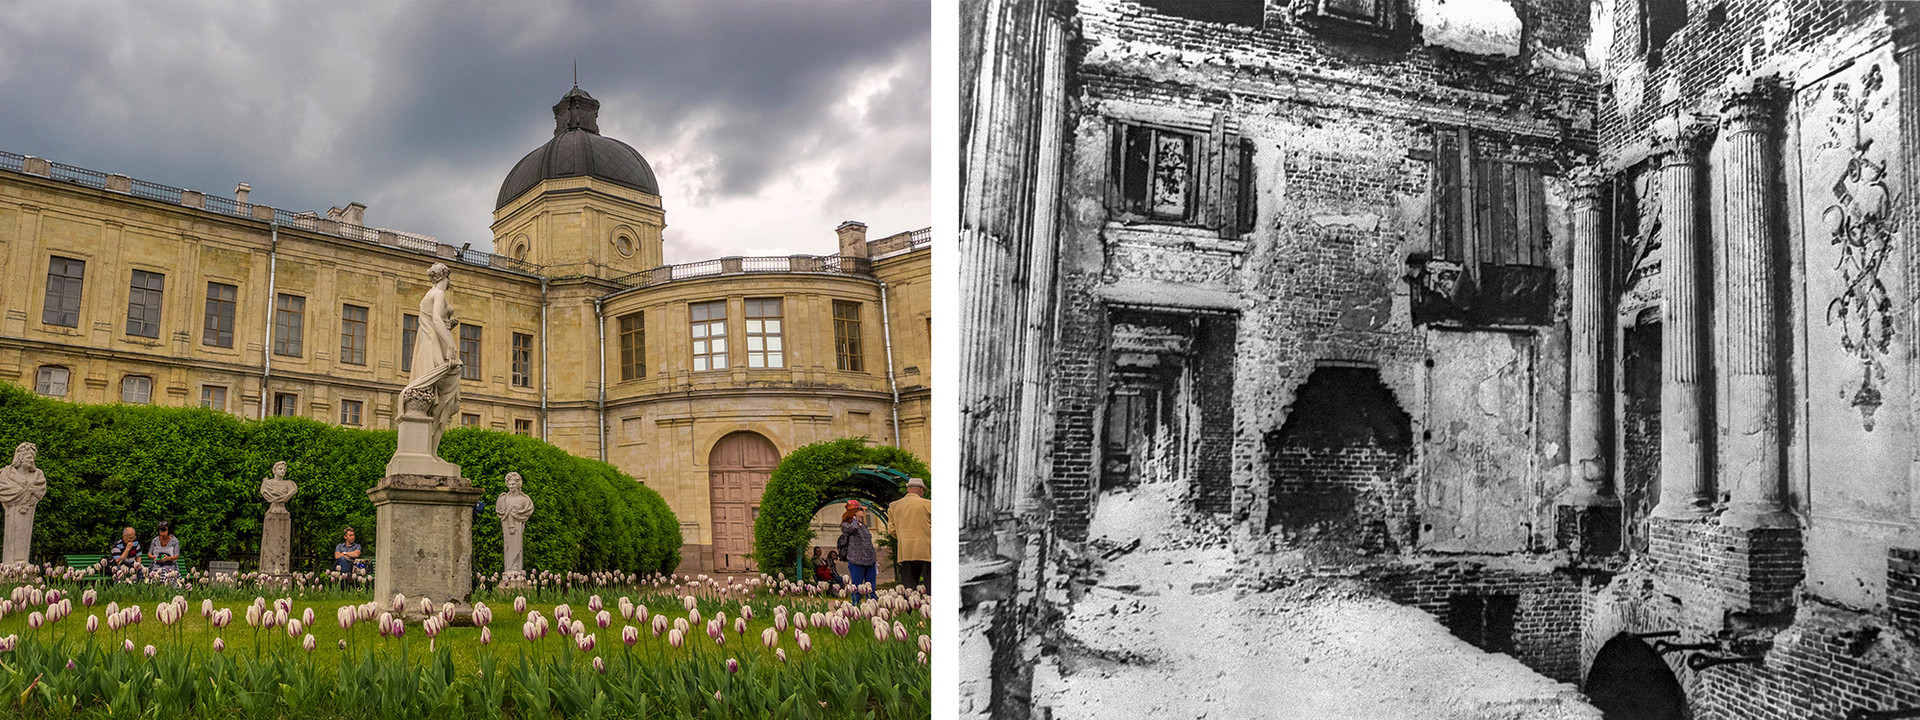 右：ガッチナの大宮殿。左：1944 年。ドイツ軍によって崩壊されたガッチナ宮殿の大理石の食堂。